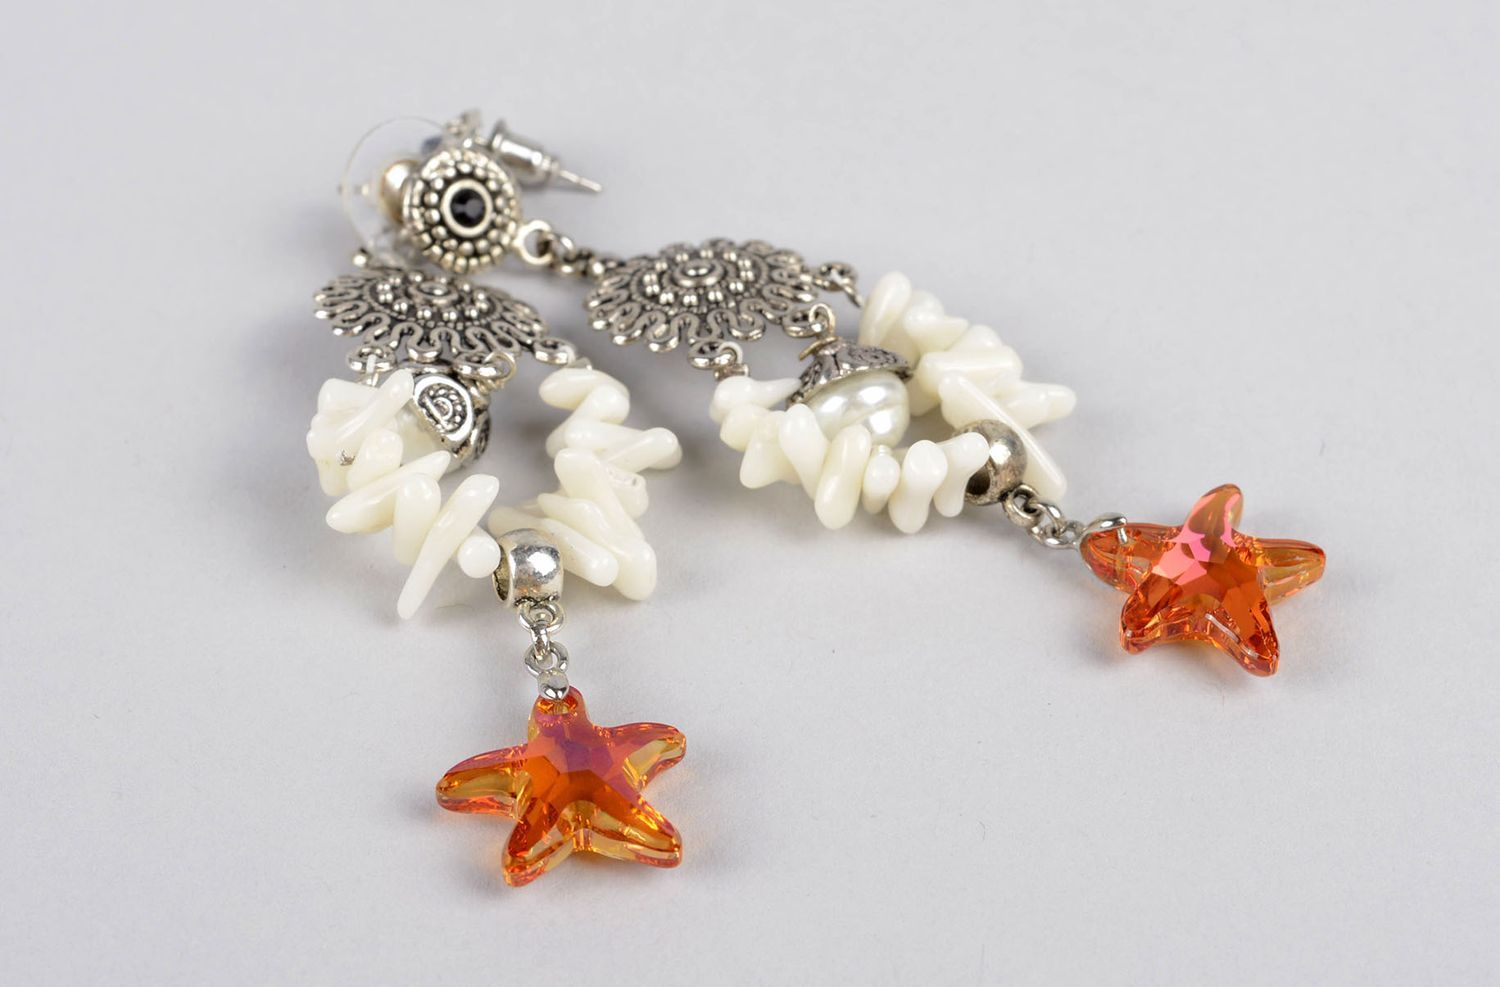 Handmade stone earrings unusual earrings for women gift ideas unusual jewelry photo 4